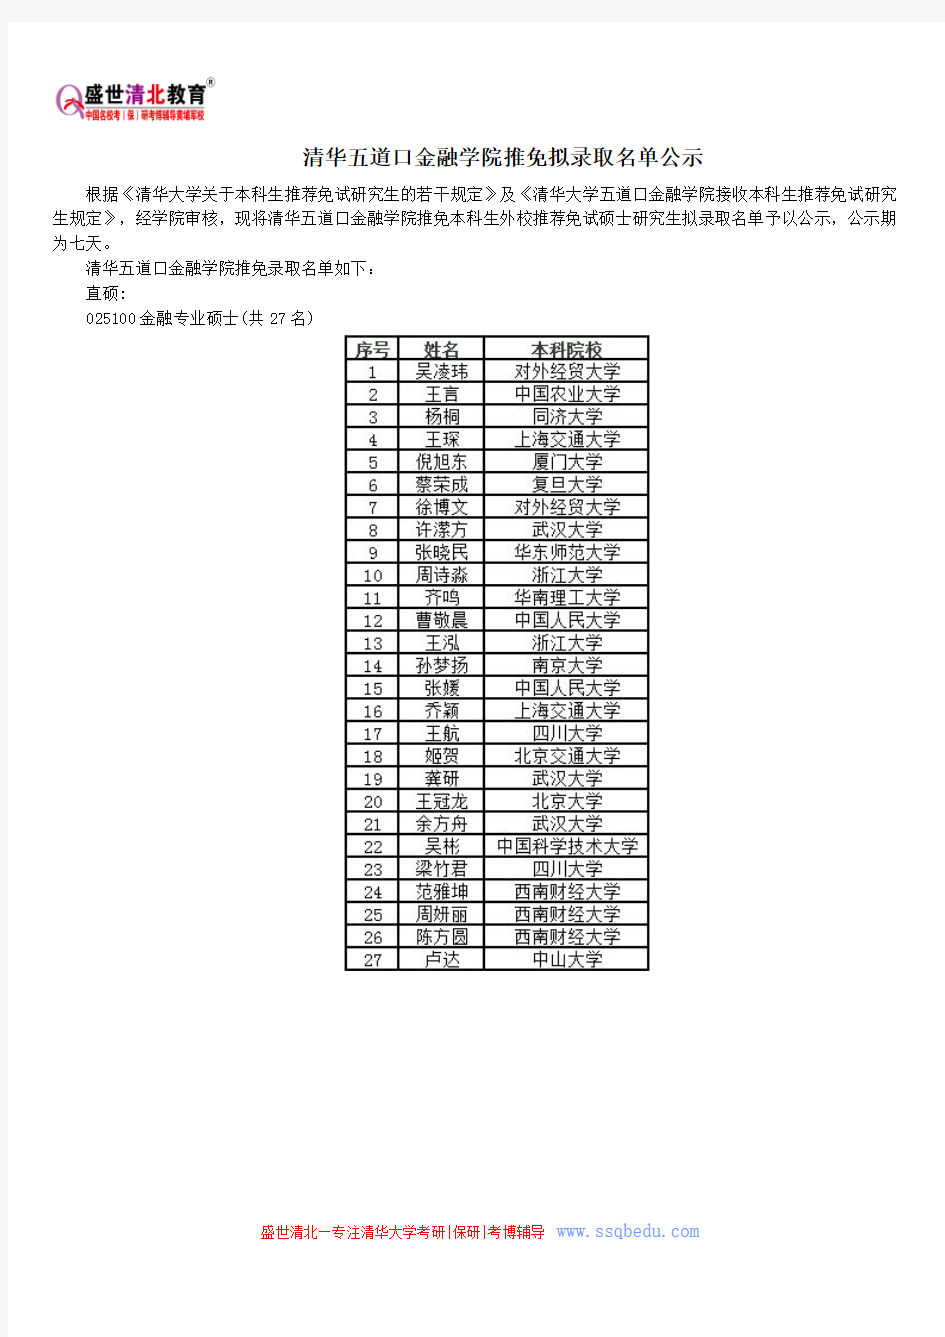 清华五道口金融学院推免拟录取名单公示